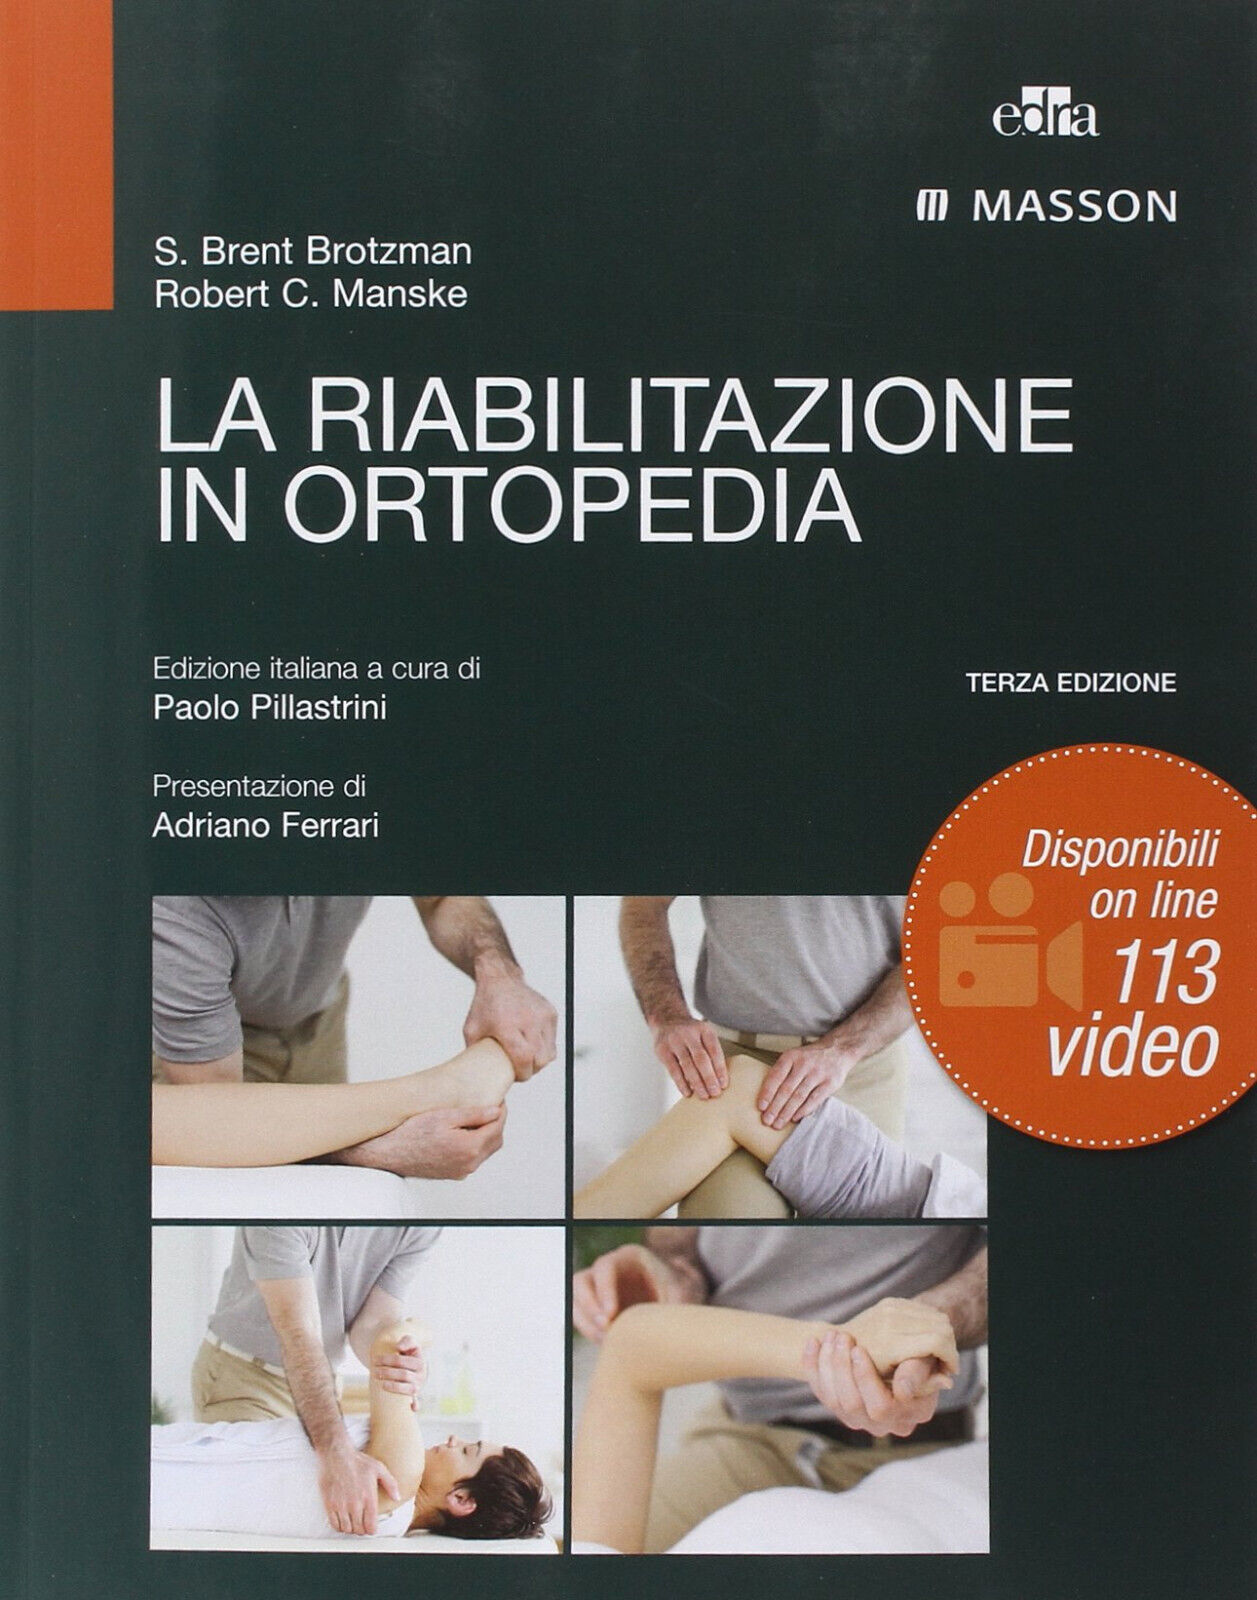 La riabilitazione in ortopedia - S. Brent Brotzman, Robert C. Manske - Edra,2014 libro usato